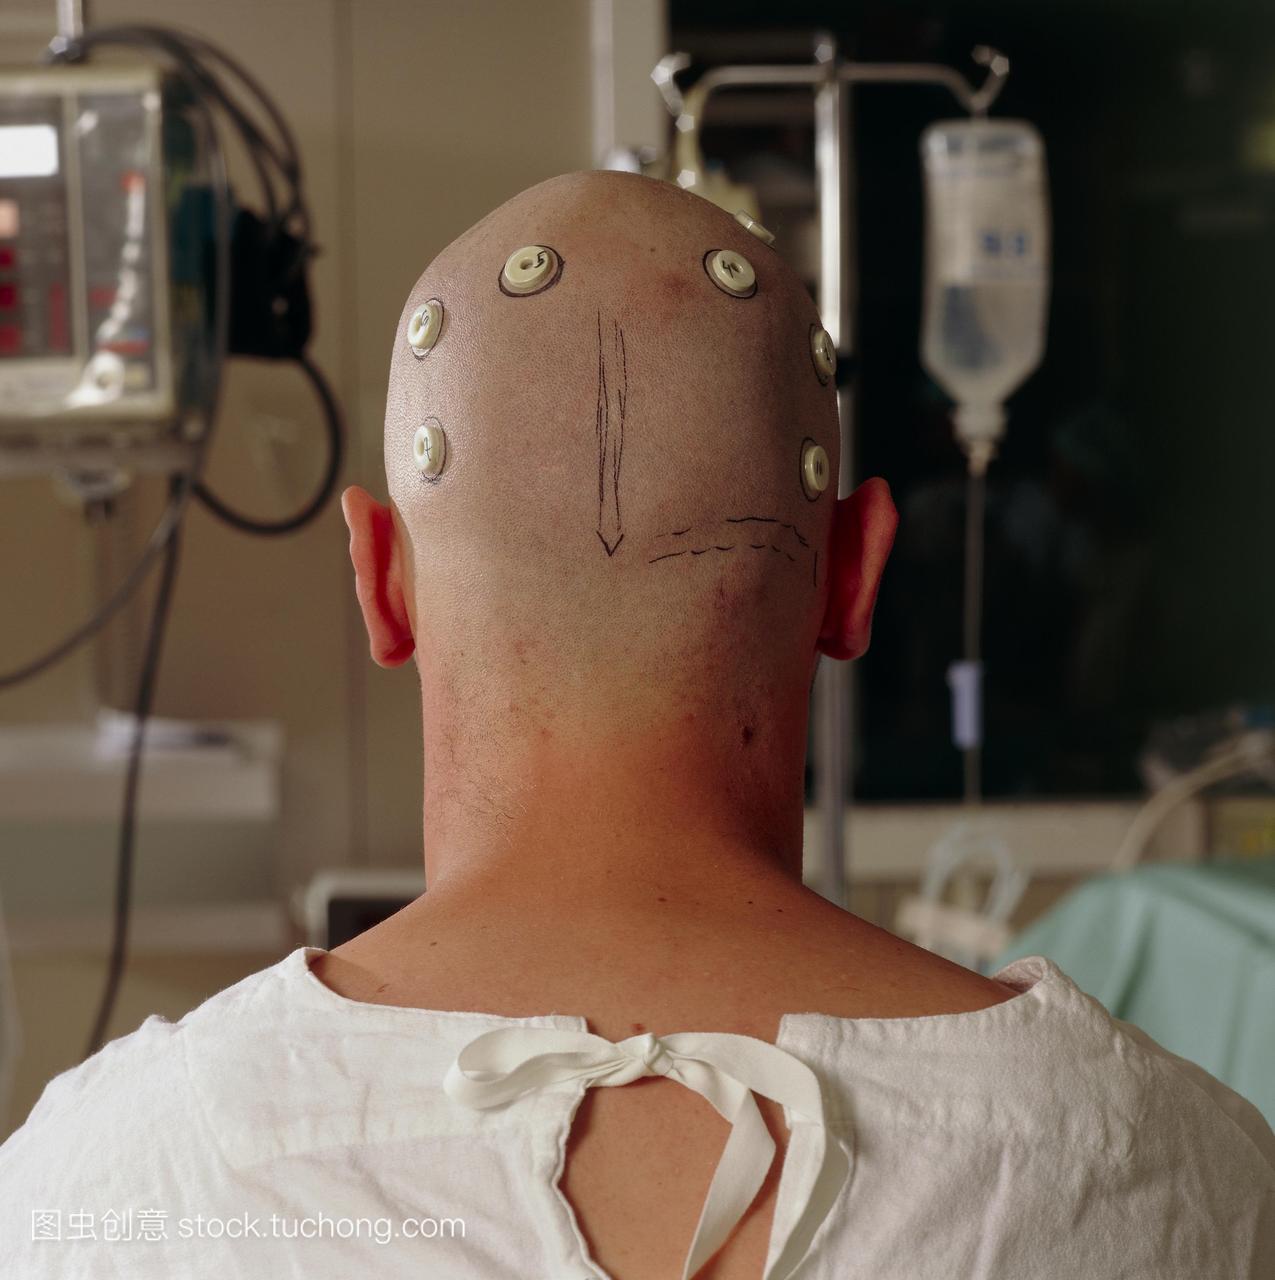 标记放置在皮肤上病人的头部使用mri扫描ct或